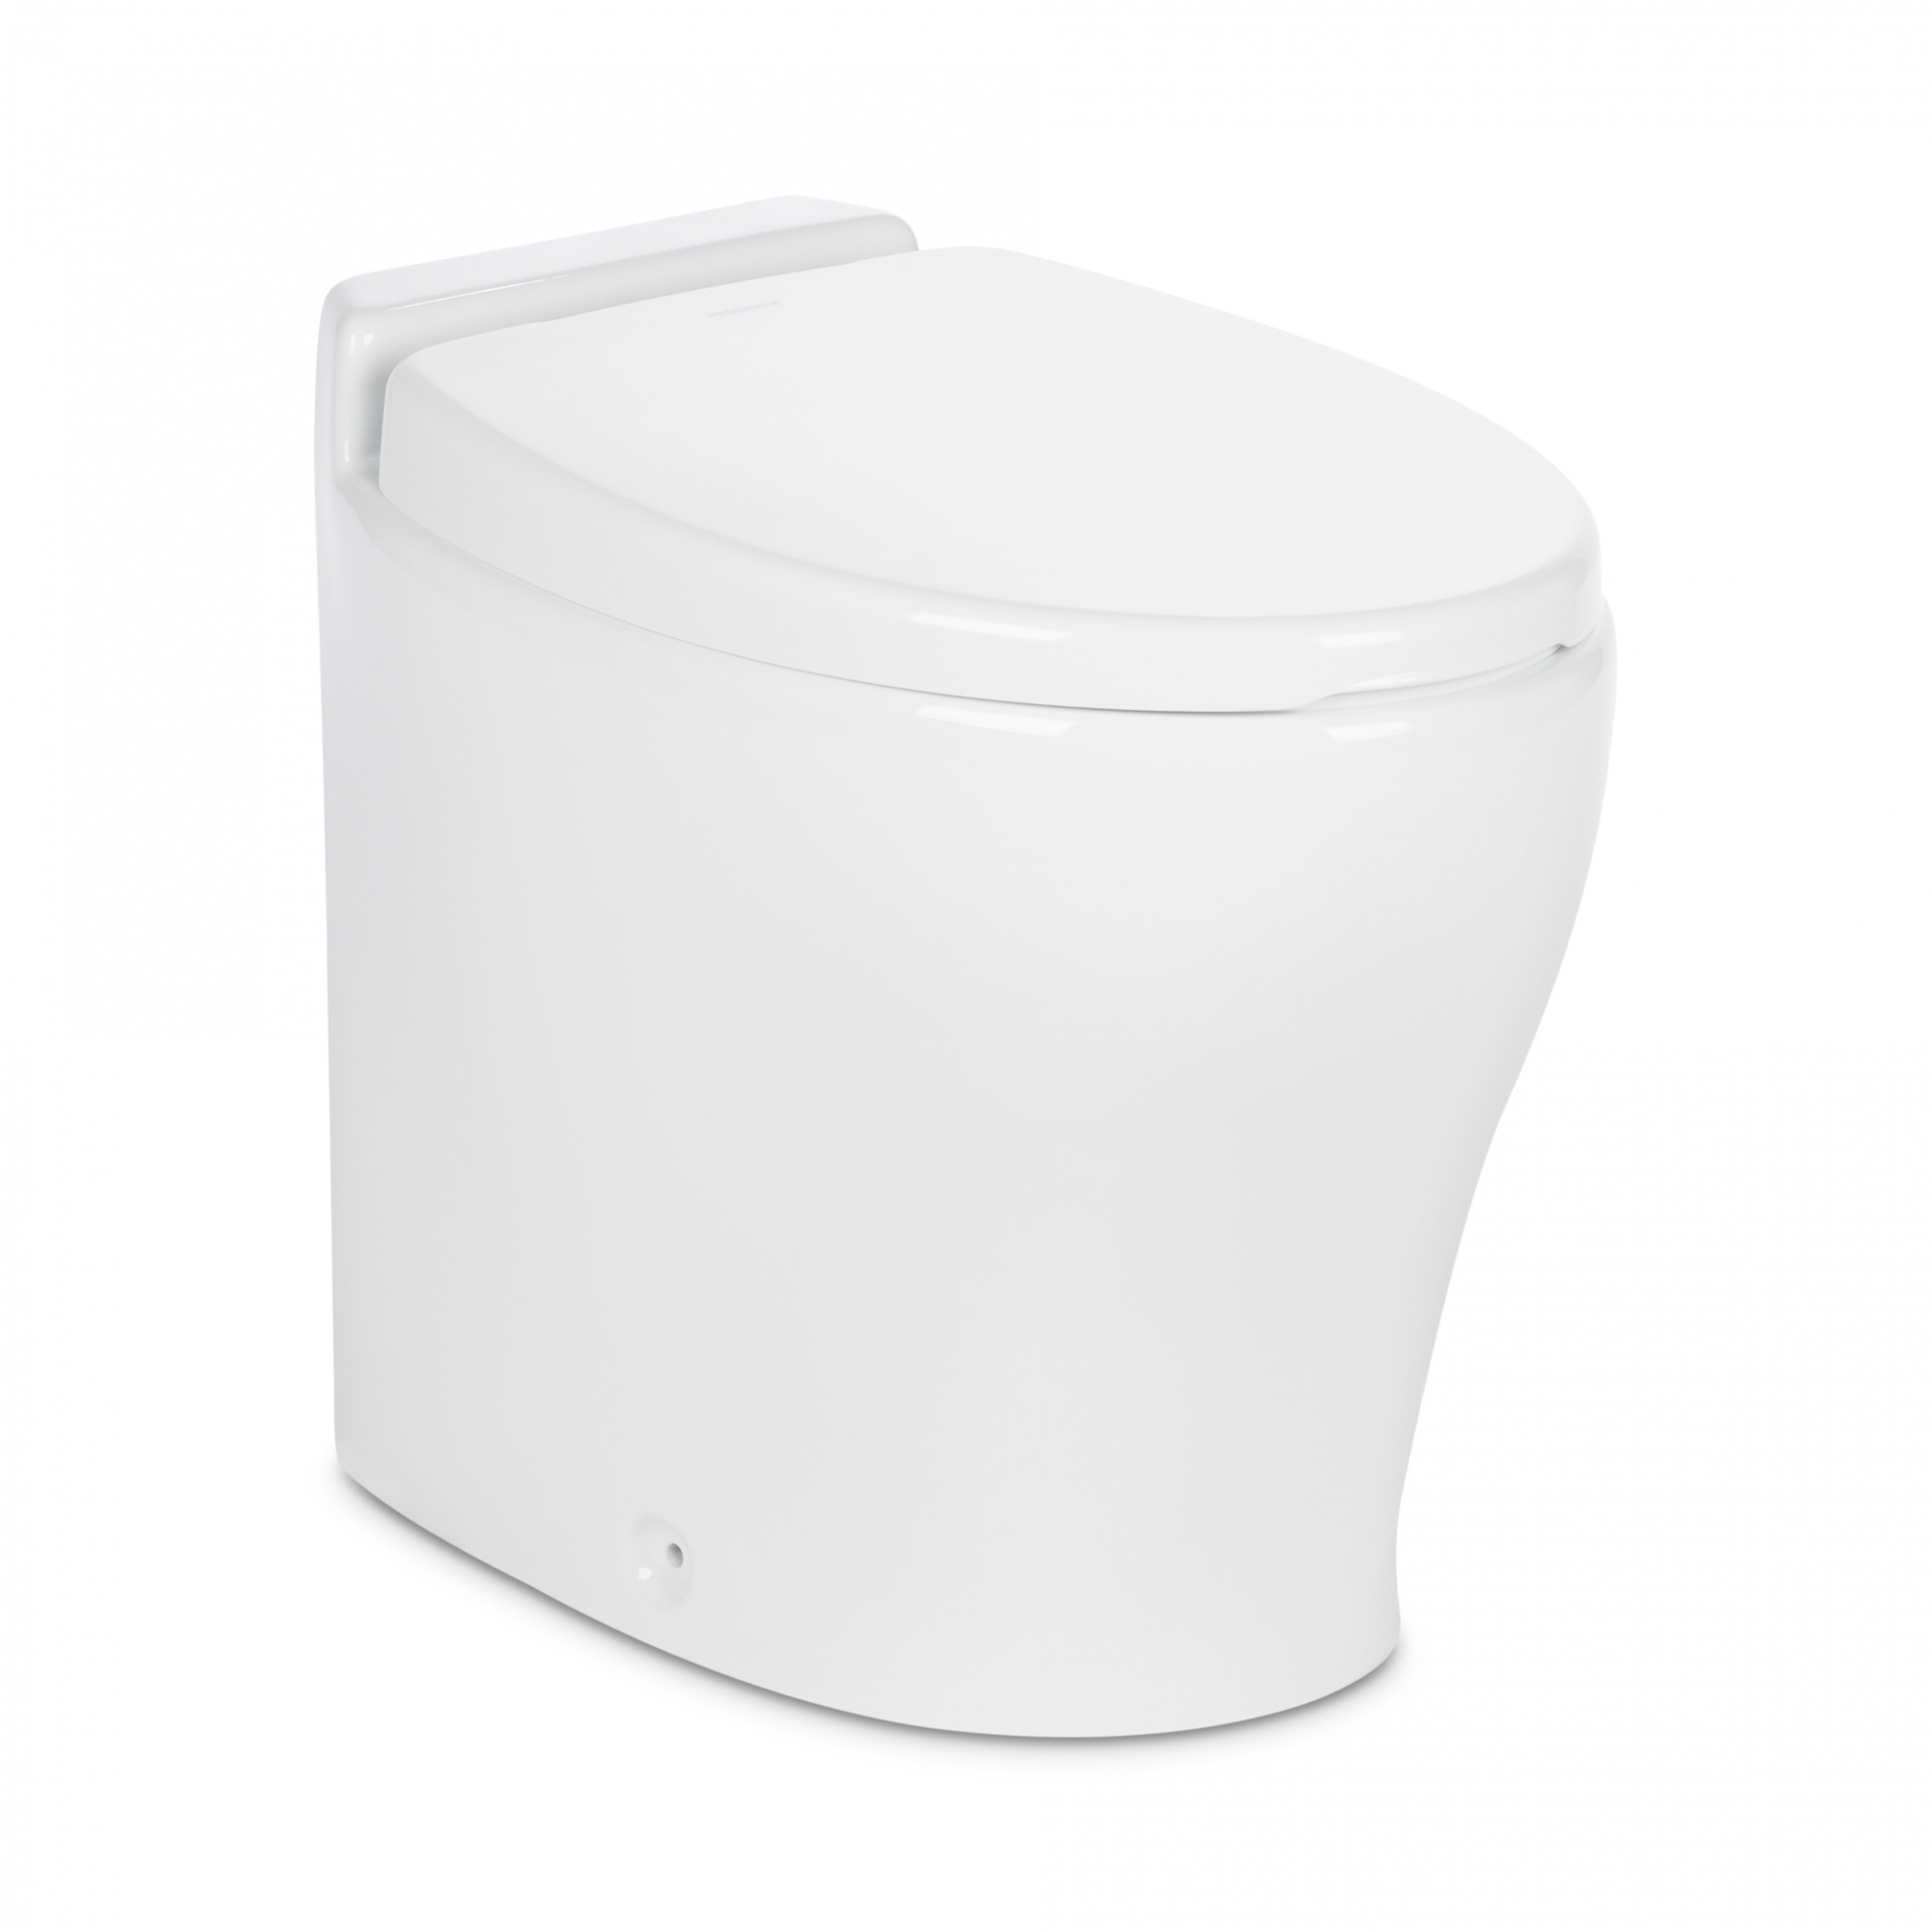 Электрический туалет с мацератором Dometic MasterFlush 8540 9600006450 24 В с пластиковым сиденьем и ручной панелью